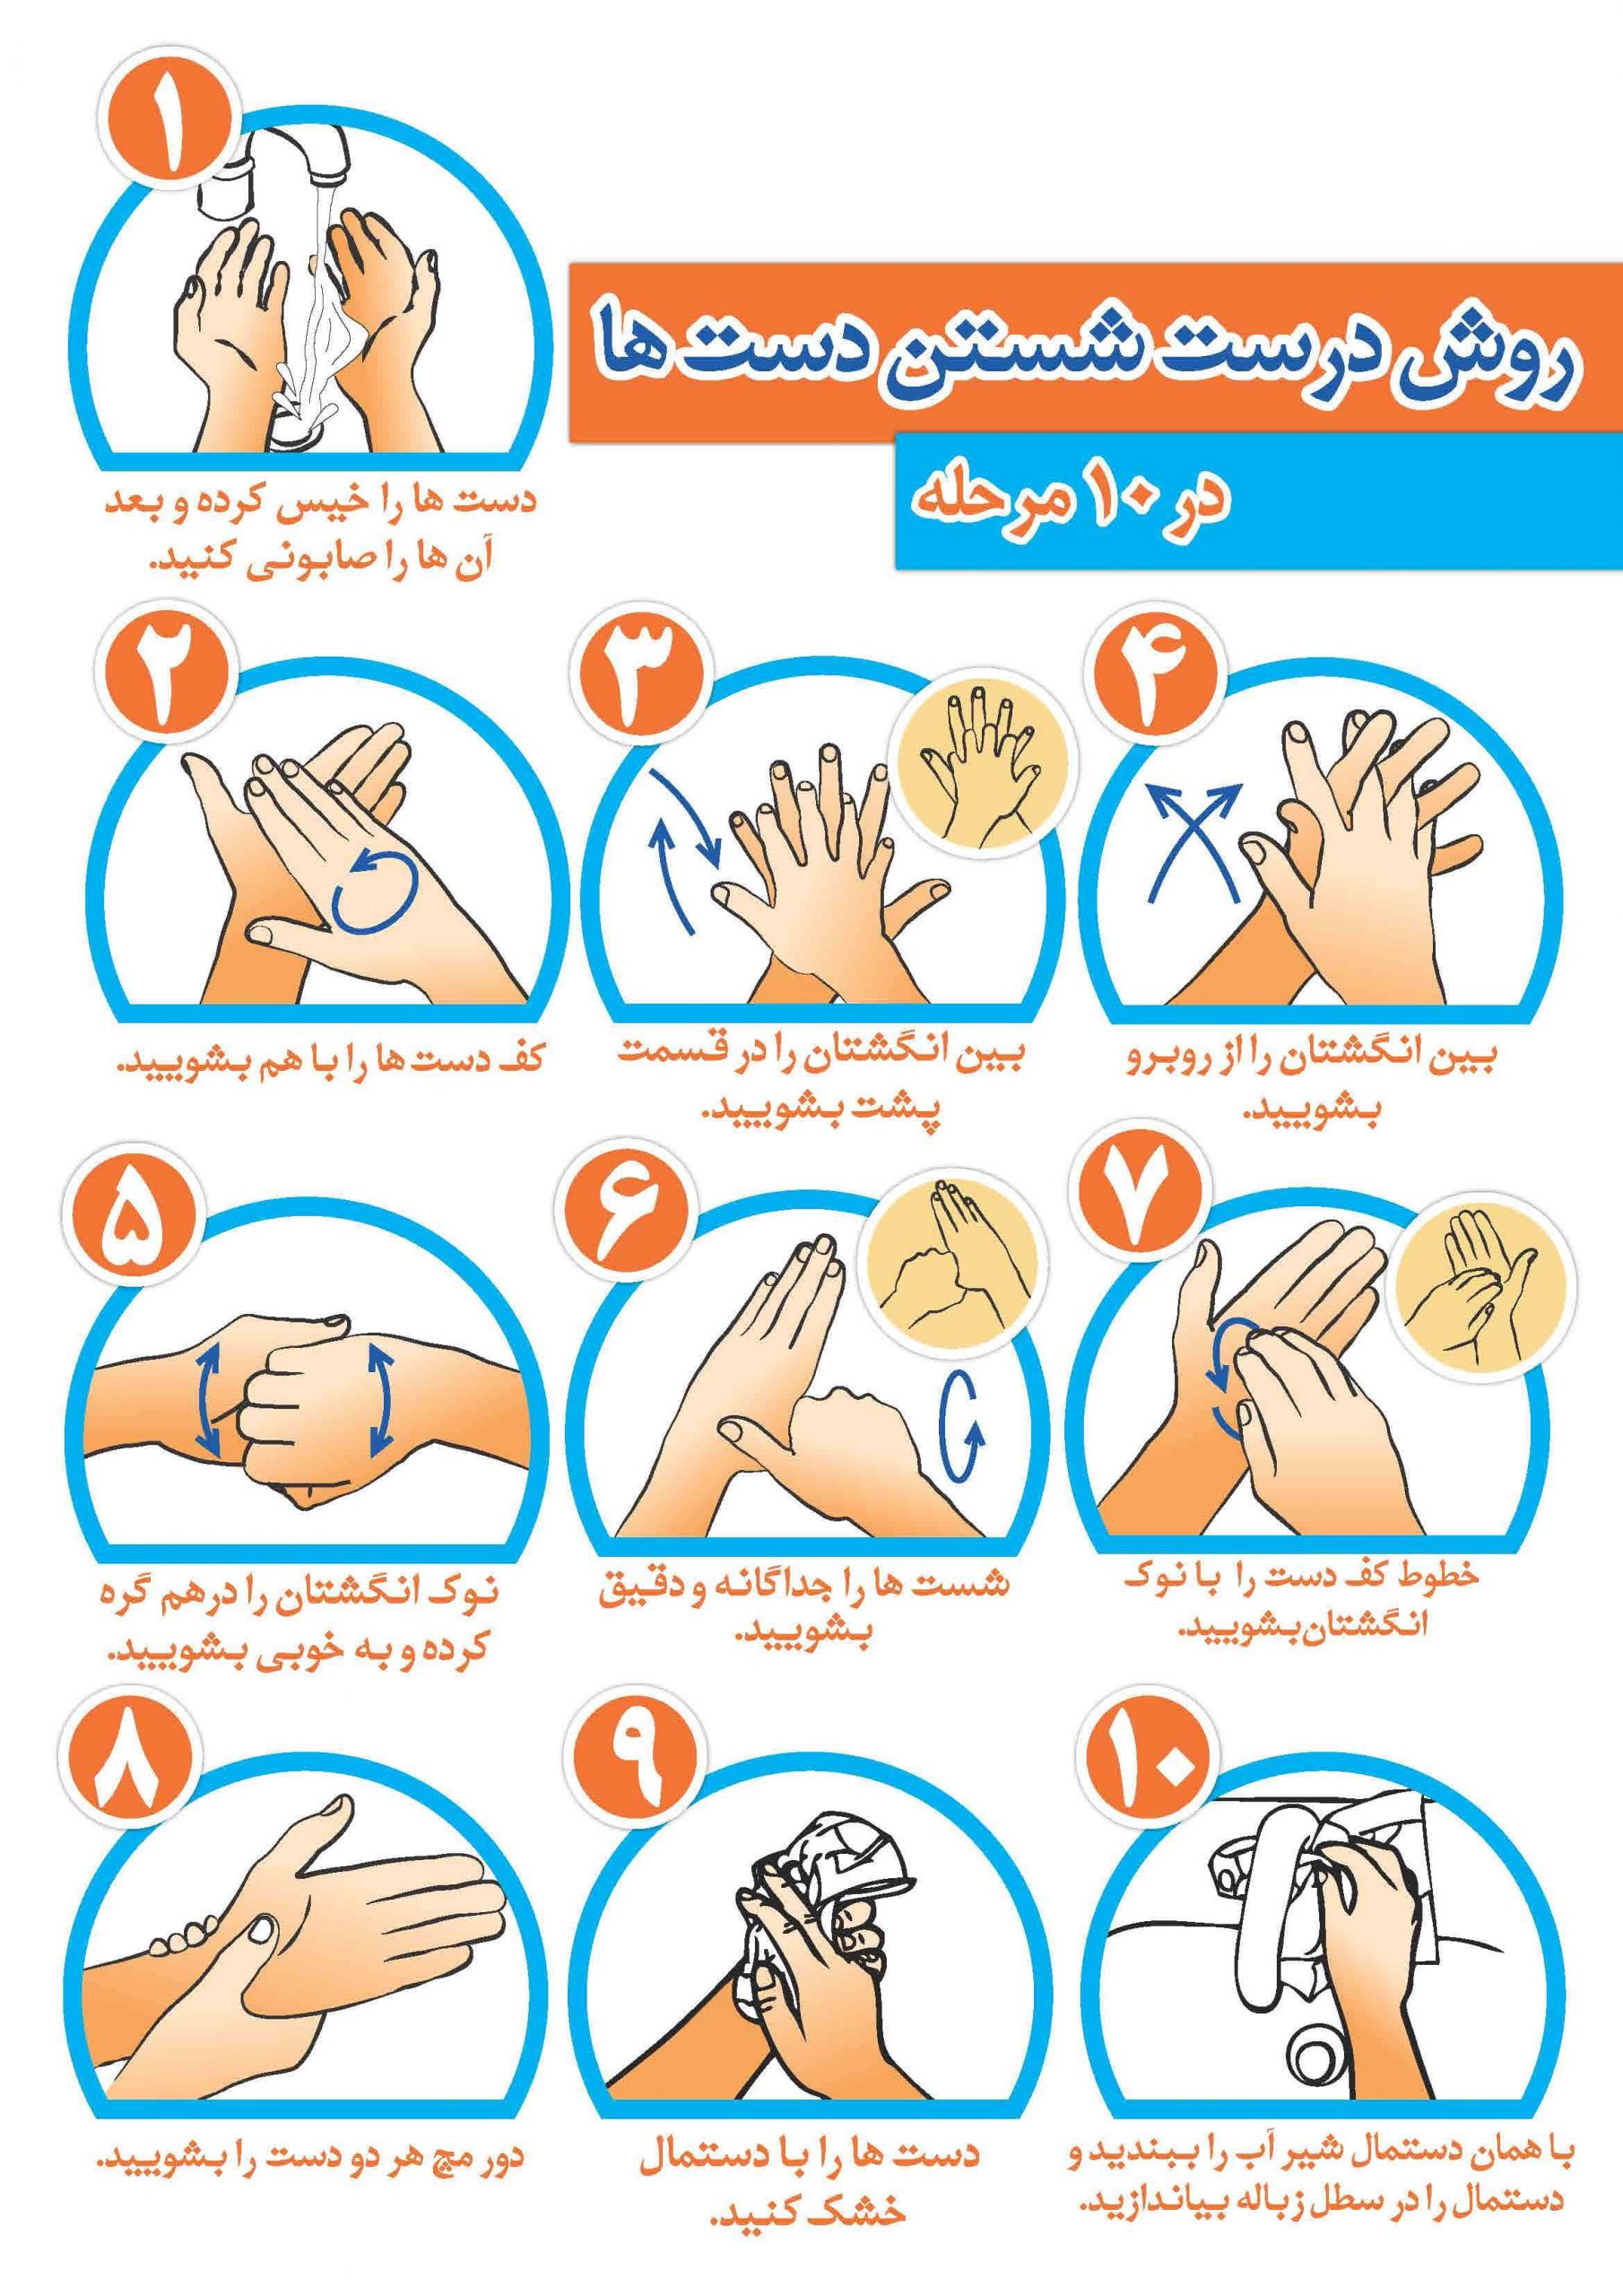  نحوه شستن دست ها در کرونا: